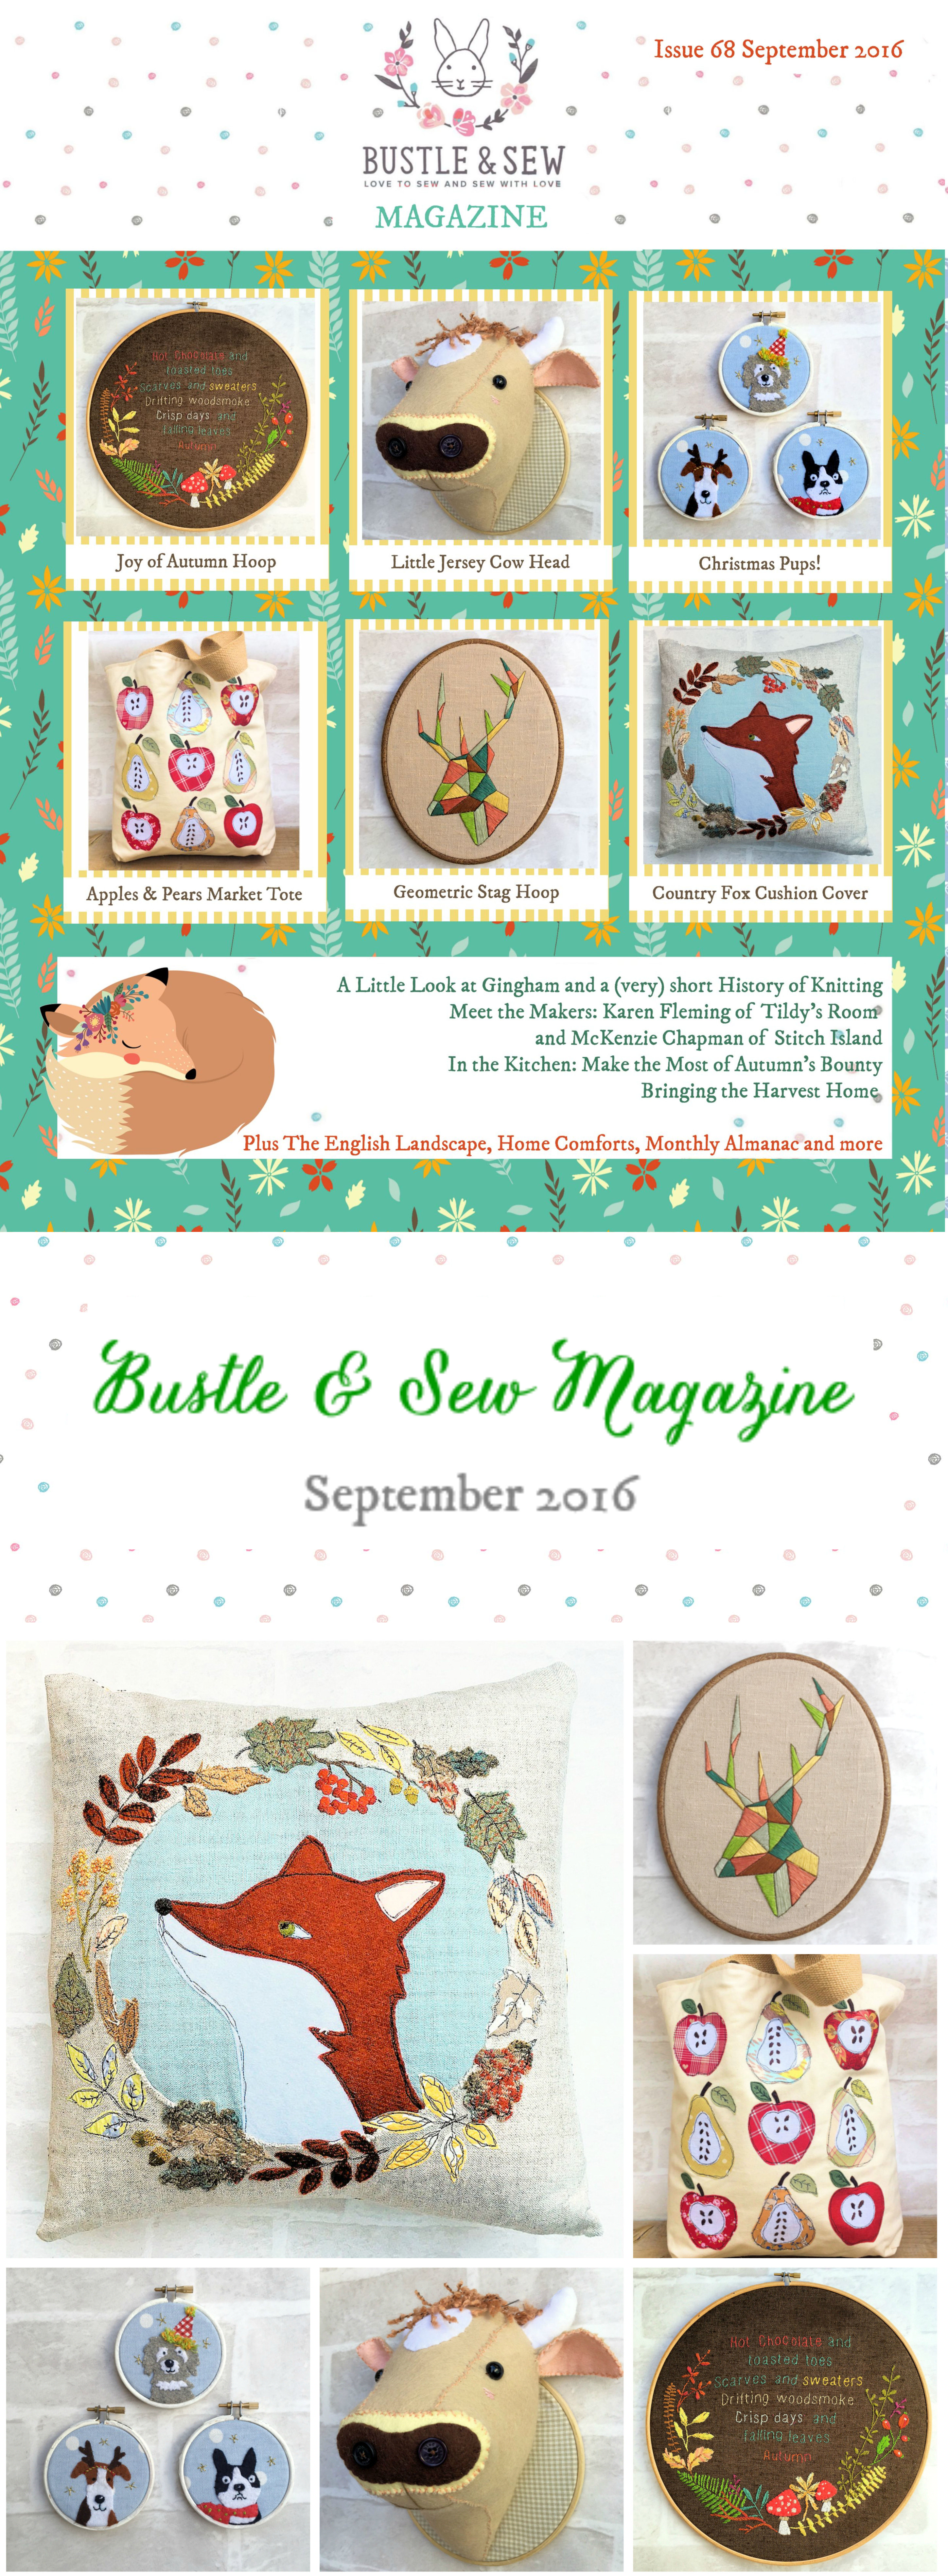 Bustle & Sew Magazine: September 2016